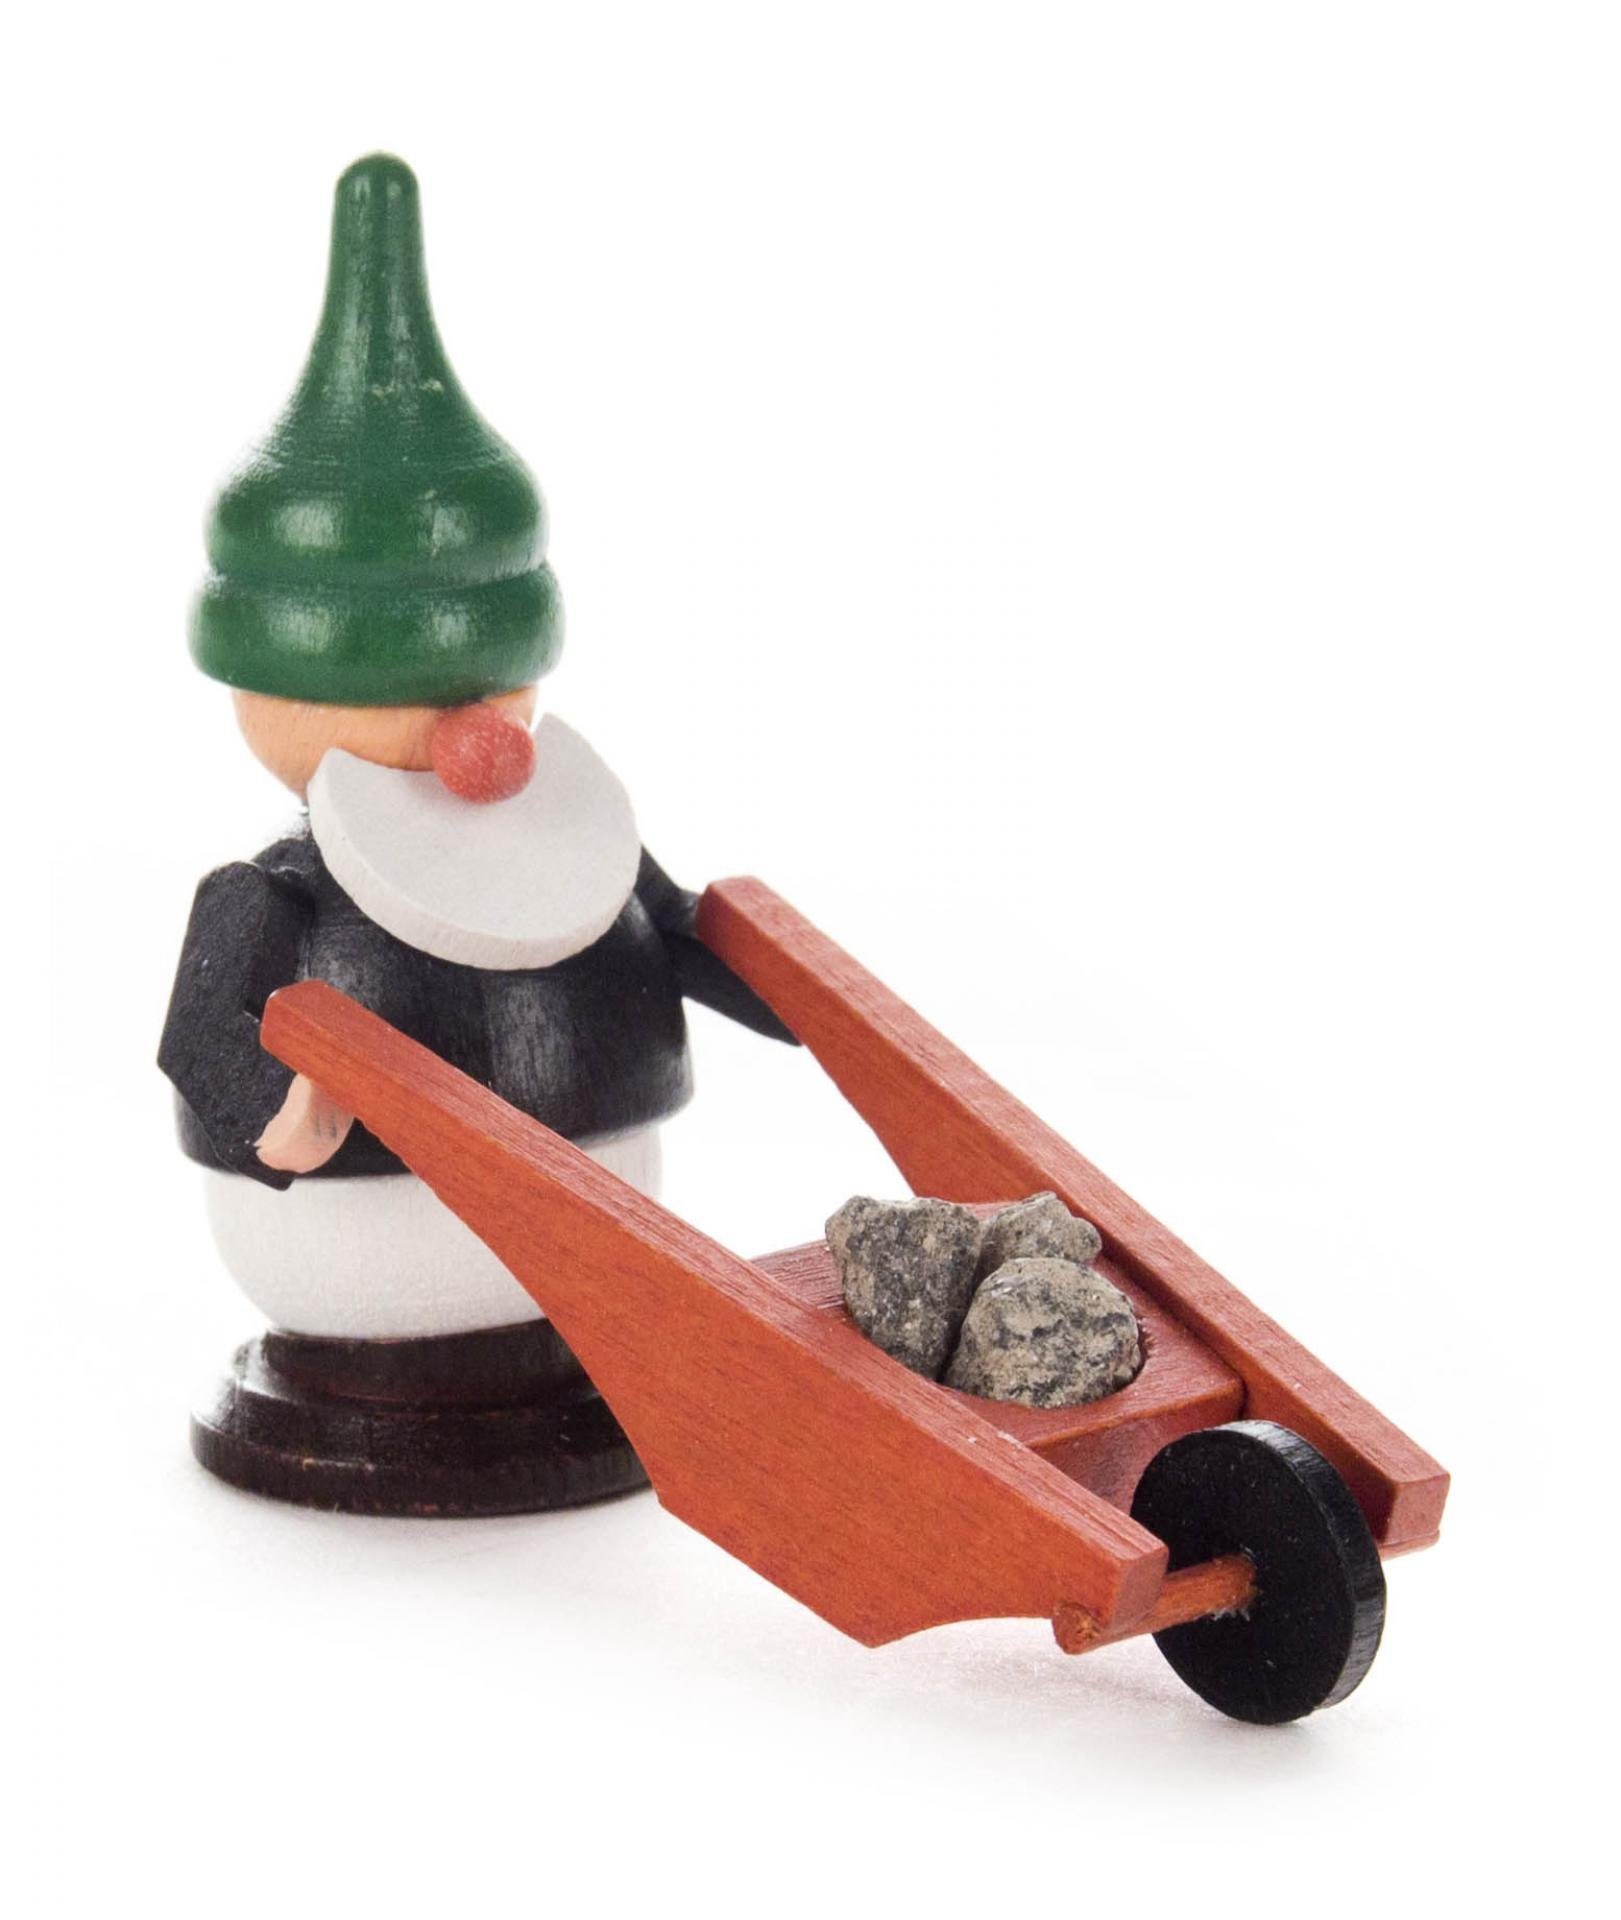 Spielwarenmacher Günther e.K. Weihnachtsfigur Miniaturfigur Zwerg mit Schubkarre BxHxT 5x6x3cm NEU, mit brauner Schubkarre, Bergmann